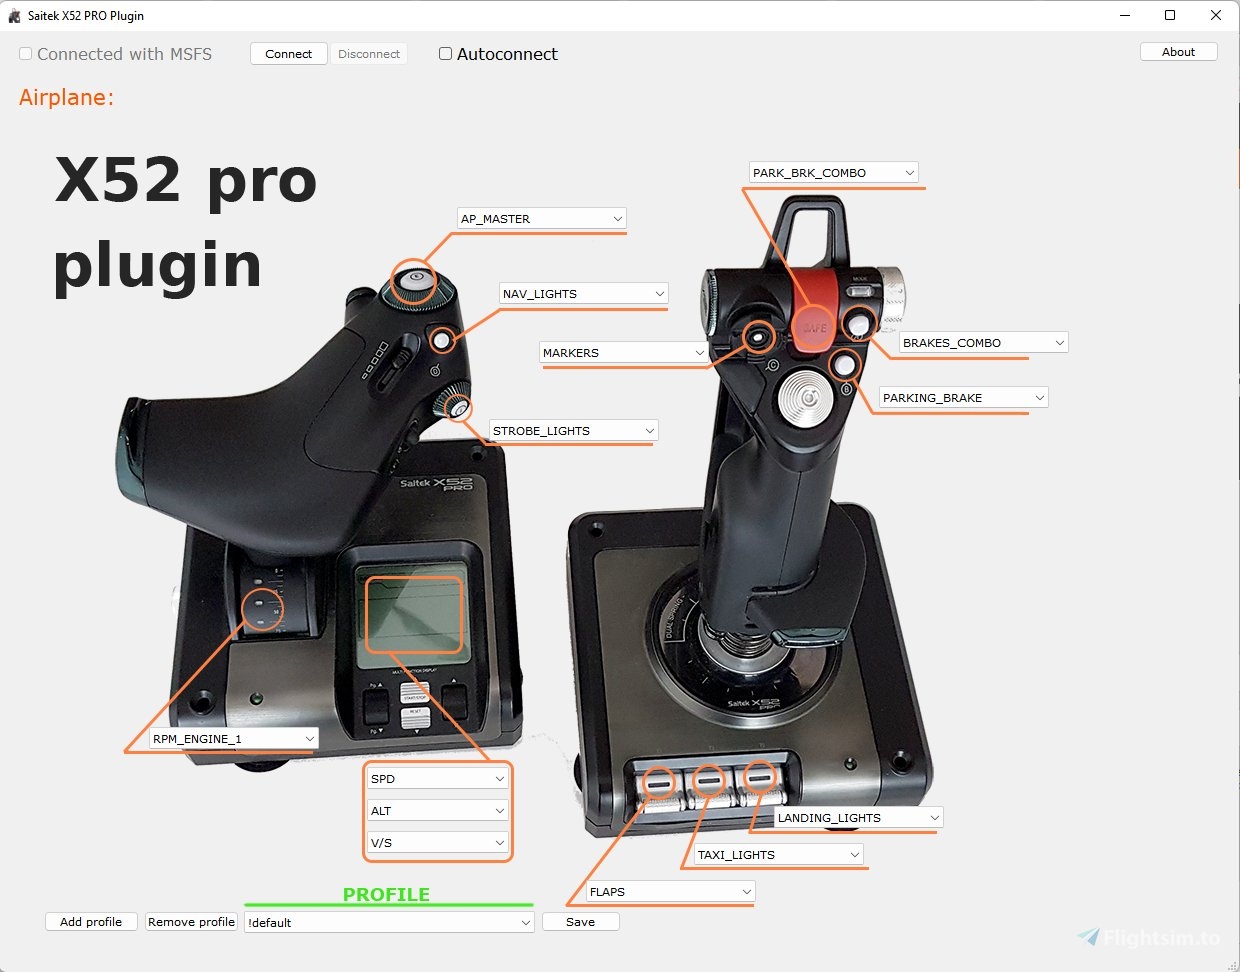 Saitek X52 PRO là thiết bị phụ trợ chơi game Microsoft Flight Simulator hoàn hảo cho các game thủ yêu thích trò chơi mô phỏng bay. Với Saitek X52 PRO, bạn có thể tùy chỉnh và kiểm soát máy bay của mình một cách dễ dàng và chính xác như các phi công chuyên nghiệp.